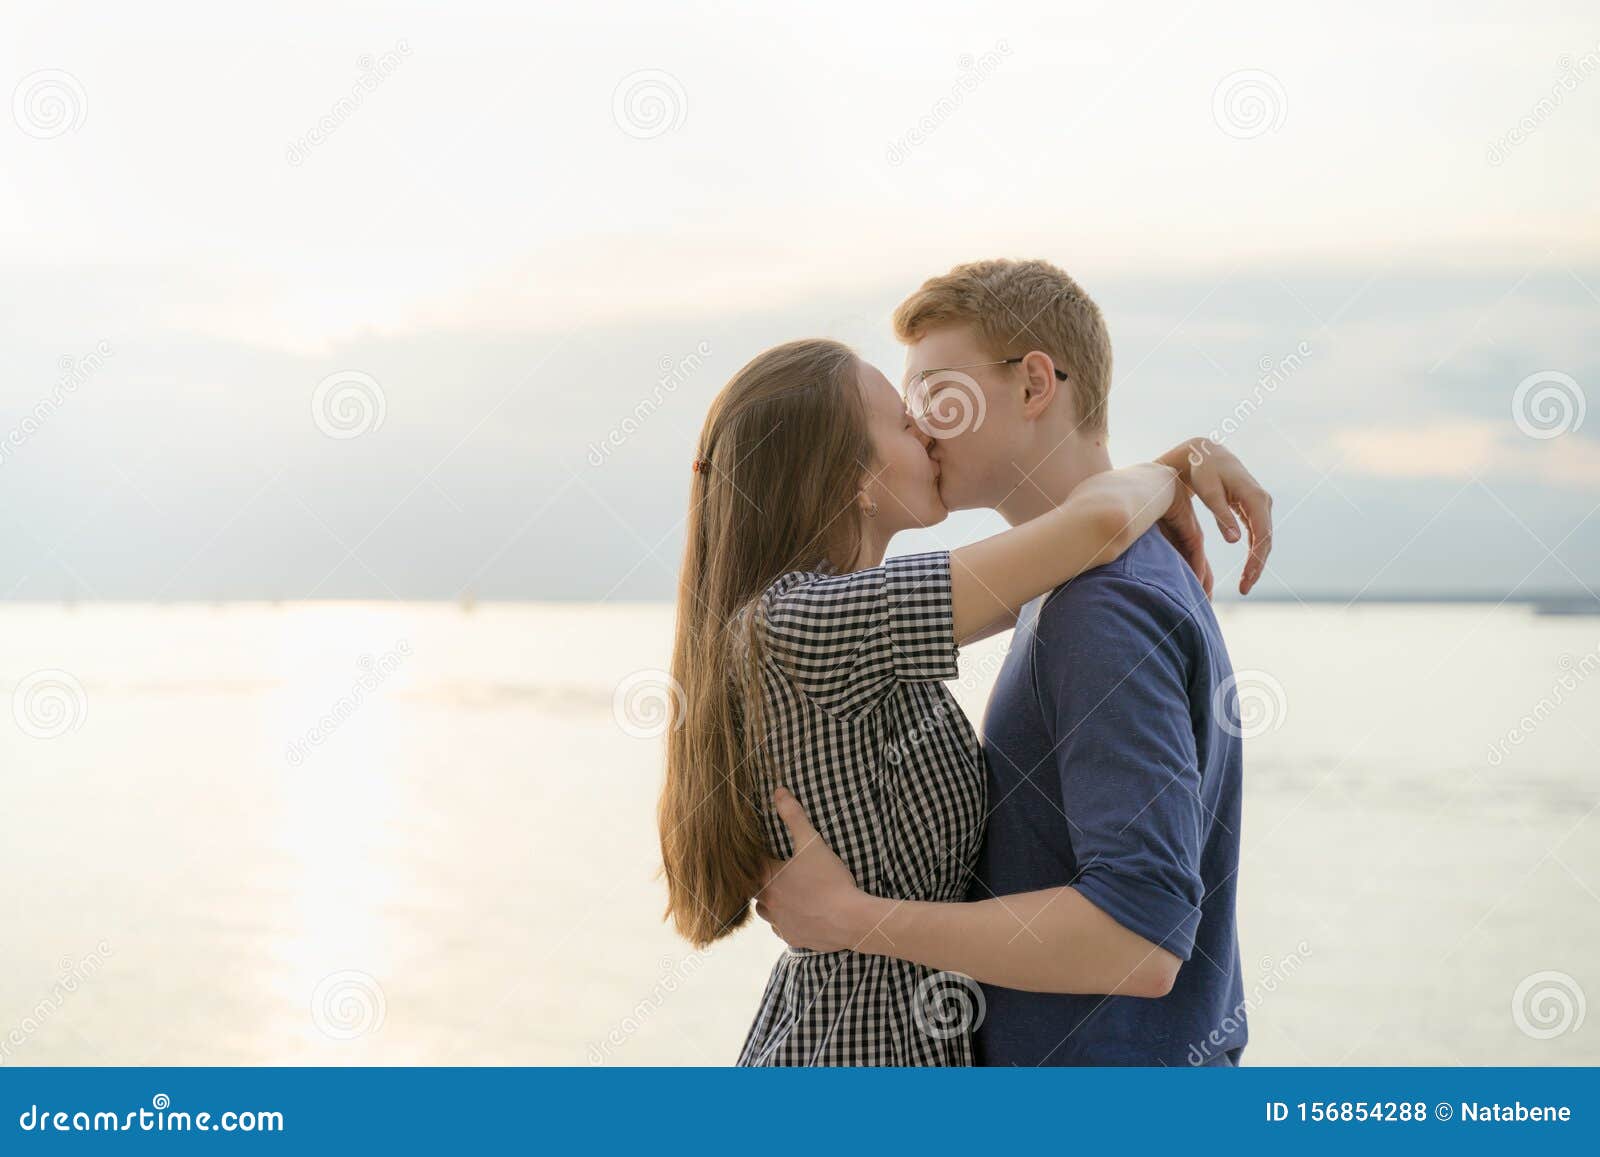 Скачать Фото Парень И Девушка Целуются